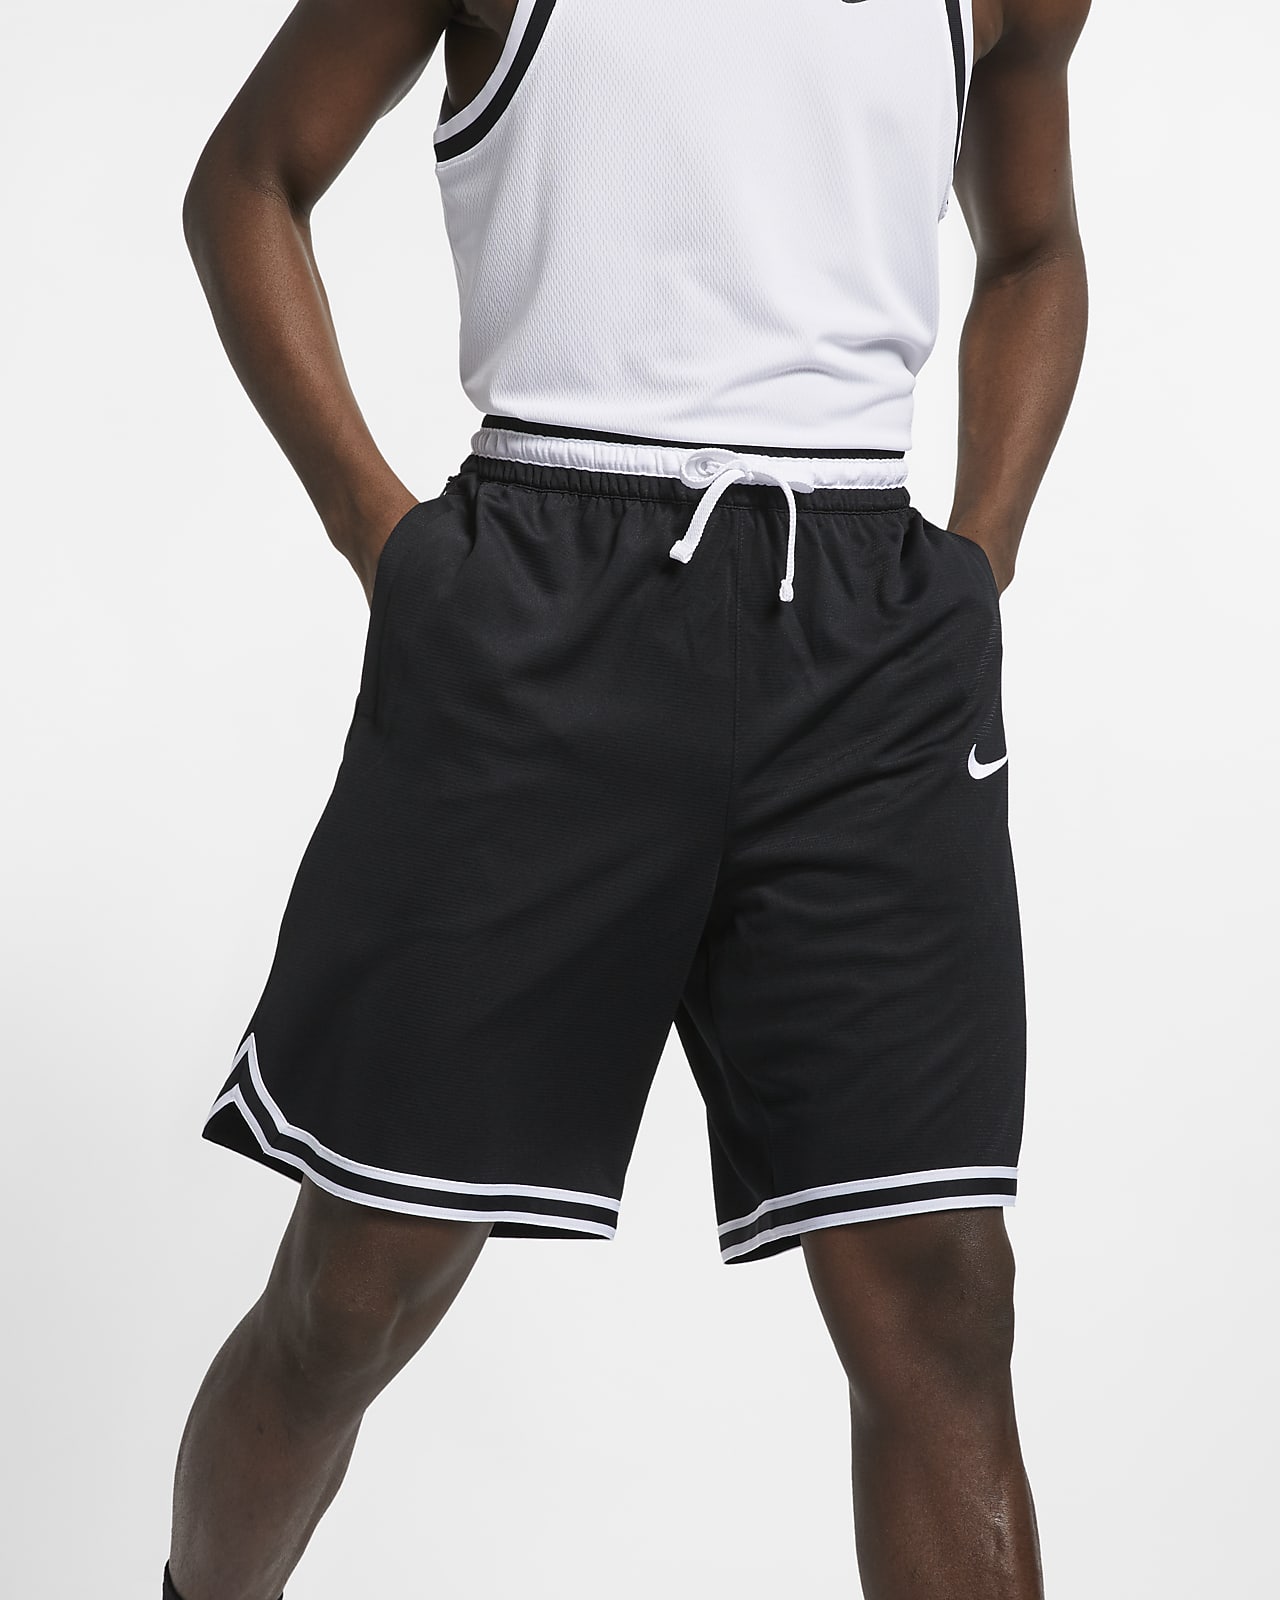 Nike Dri-FIT DNA 男款籃球褲。Nike TW